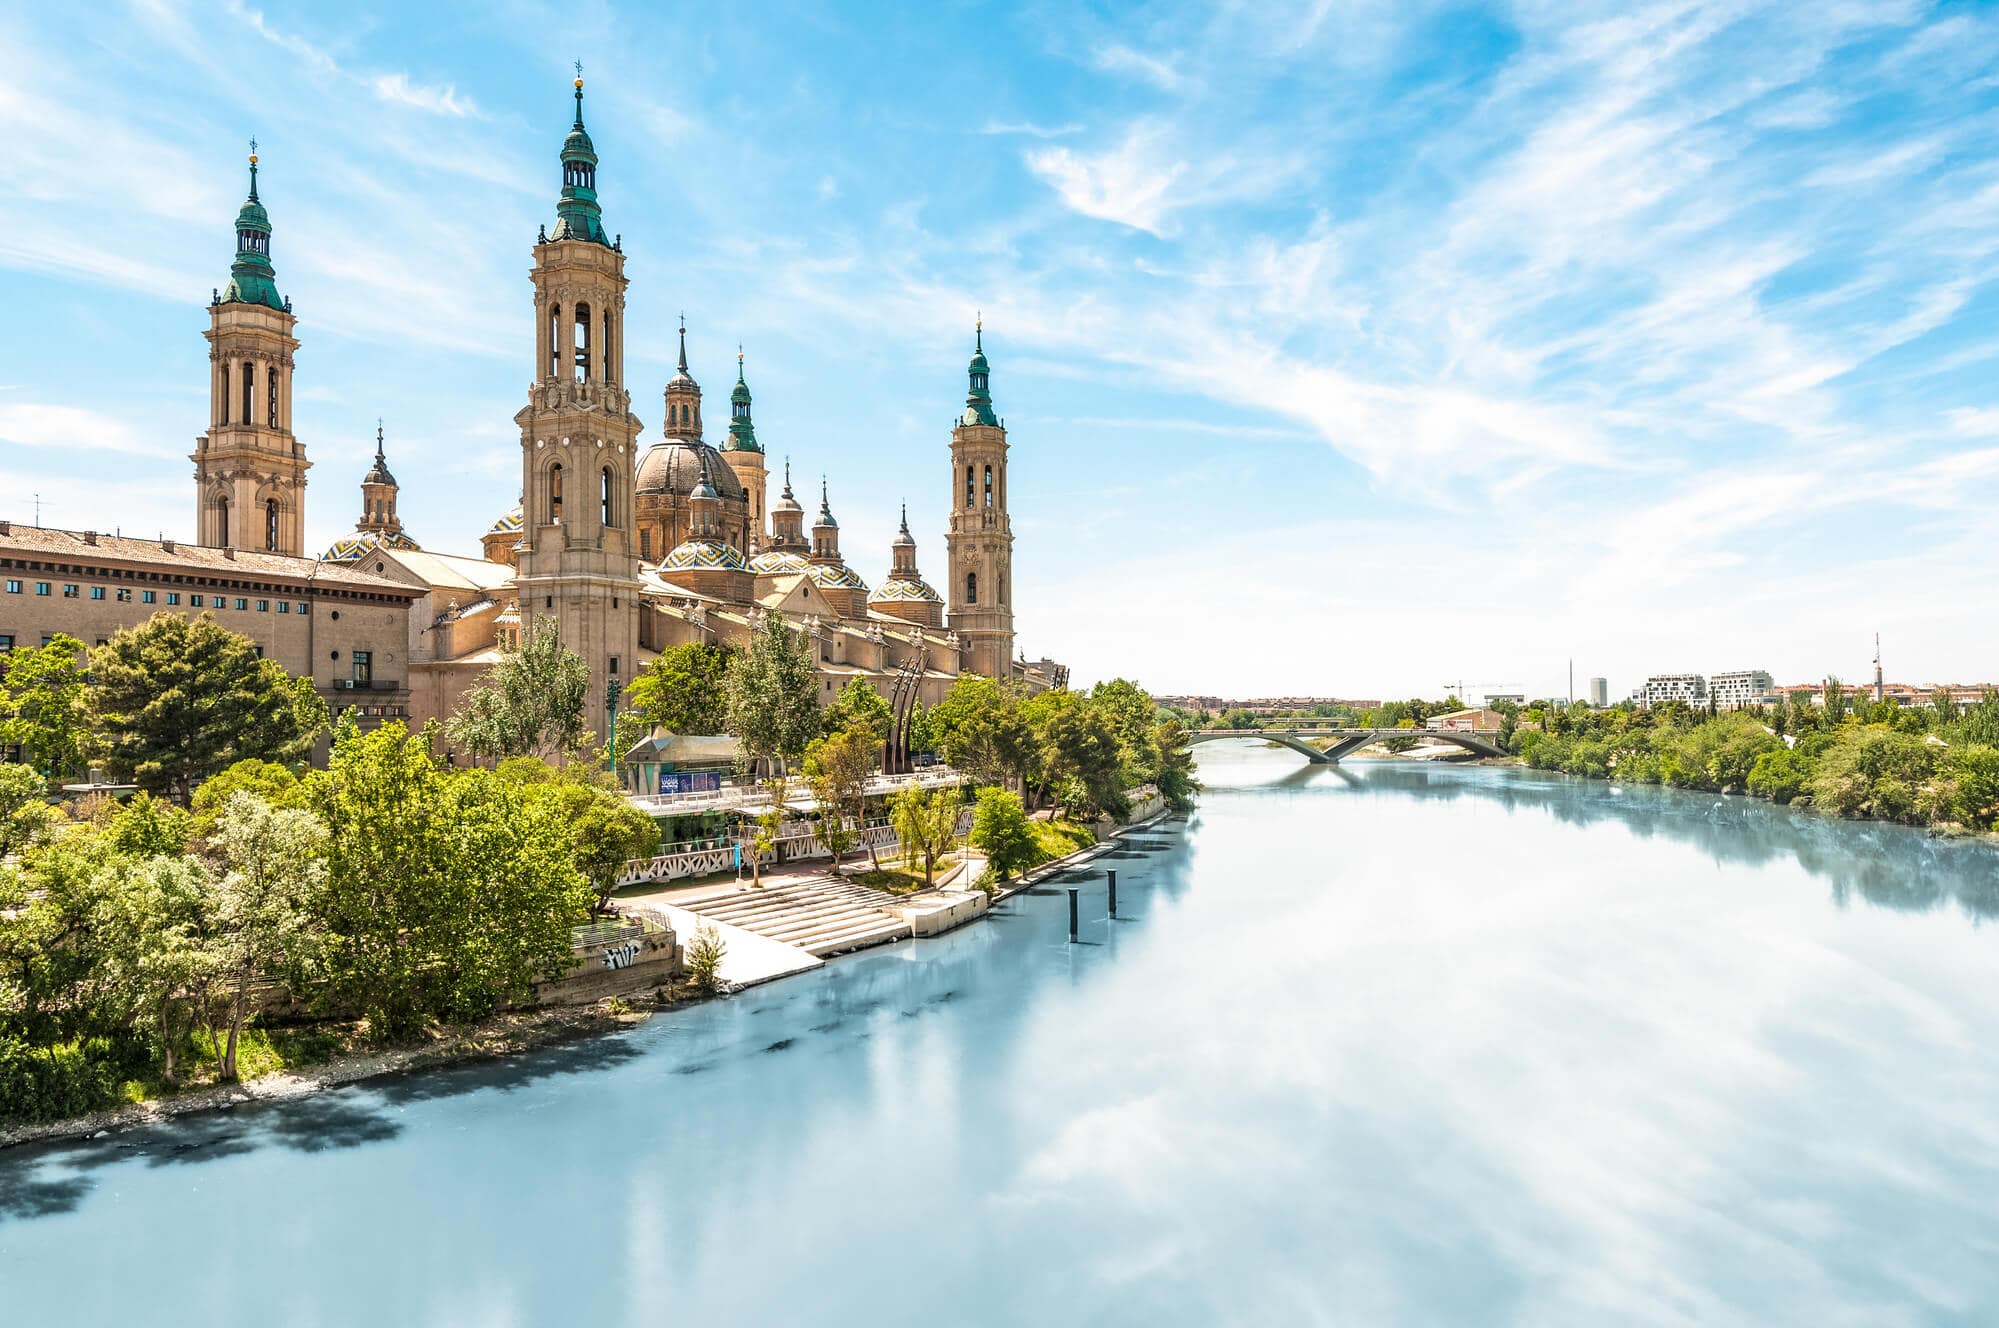 Basílica de Nuestra Señora del Pilar in Zaragoza - The Ultimate Spain Bucket List experience